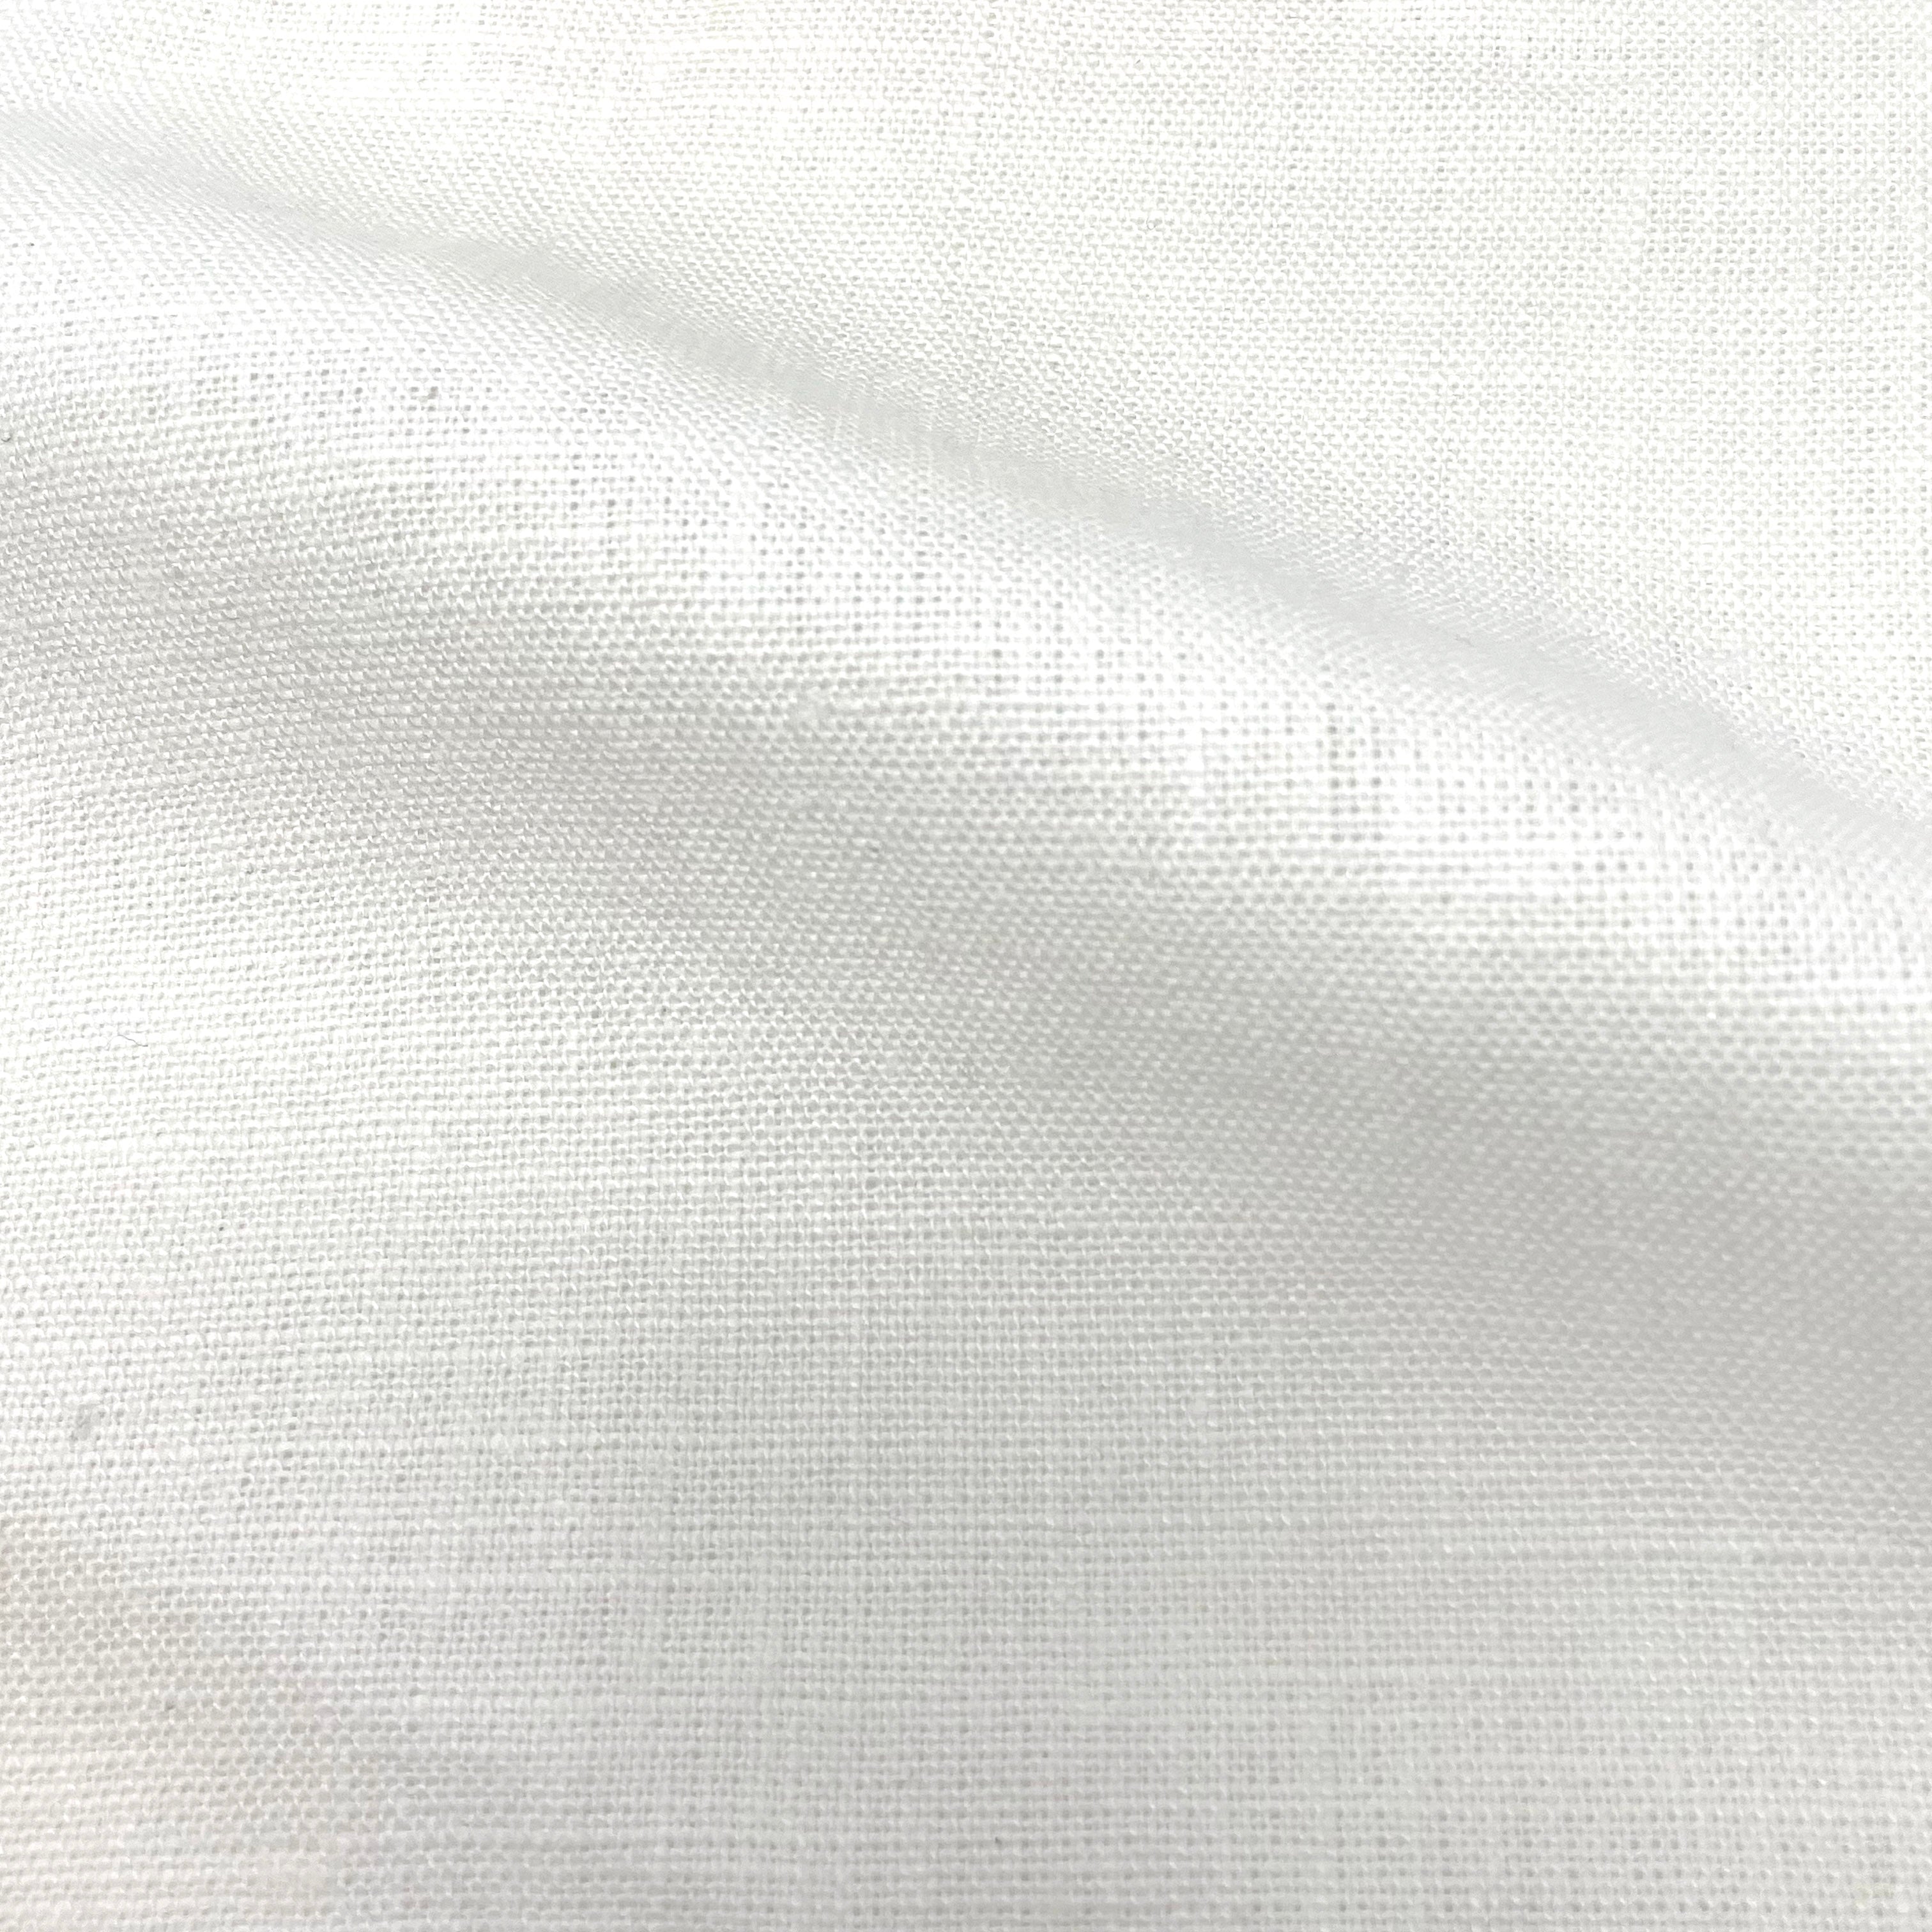 White Linen Blend Jersey Fabric